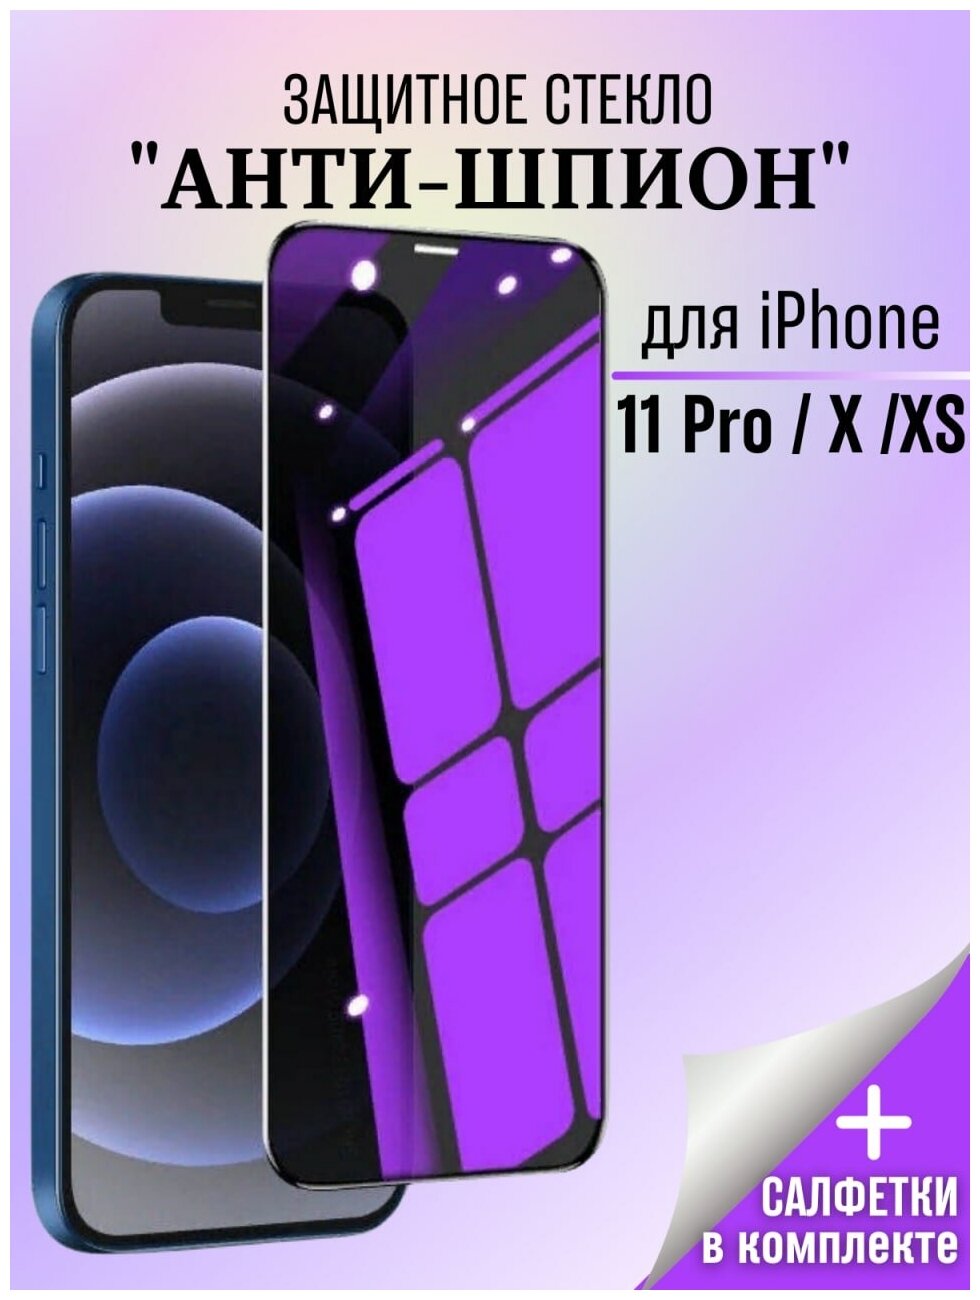 Защитное стекло Антишпион для iPhone 11 PRO / X / Стекло антишпион/Стекло для iPhone 11 PRO / X / XS